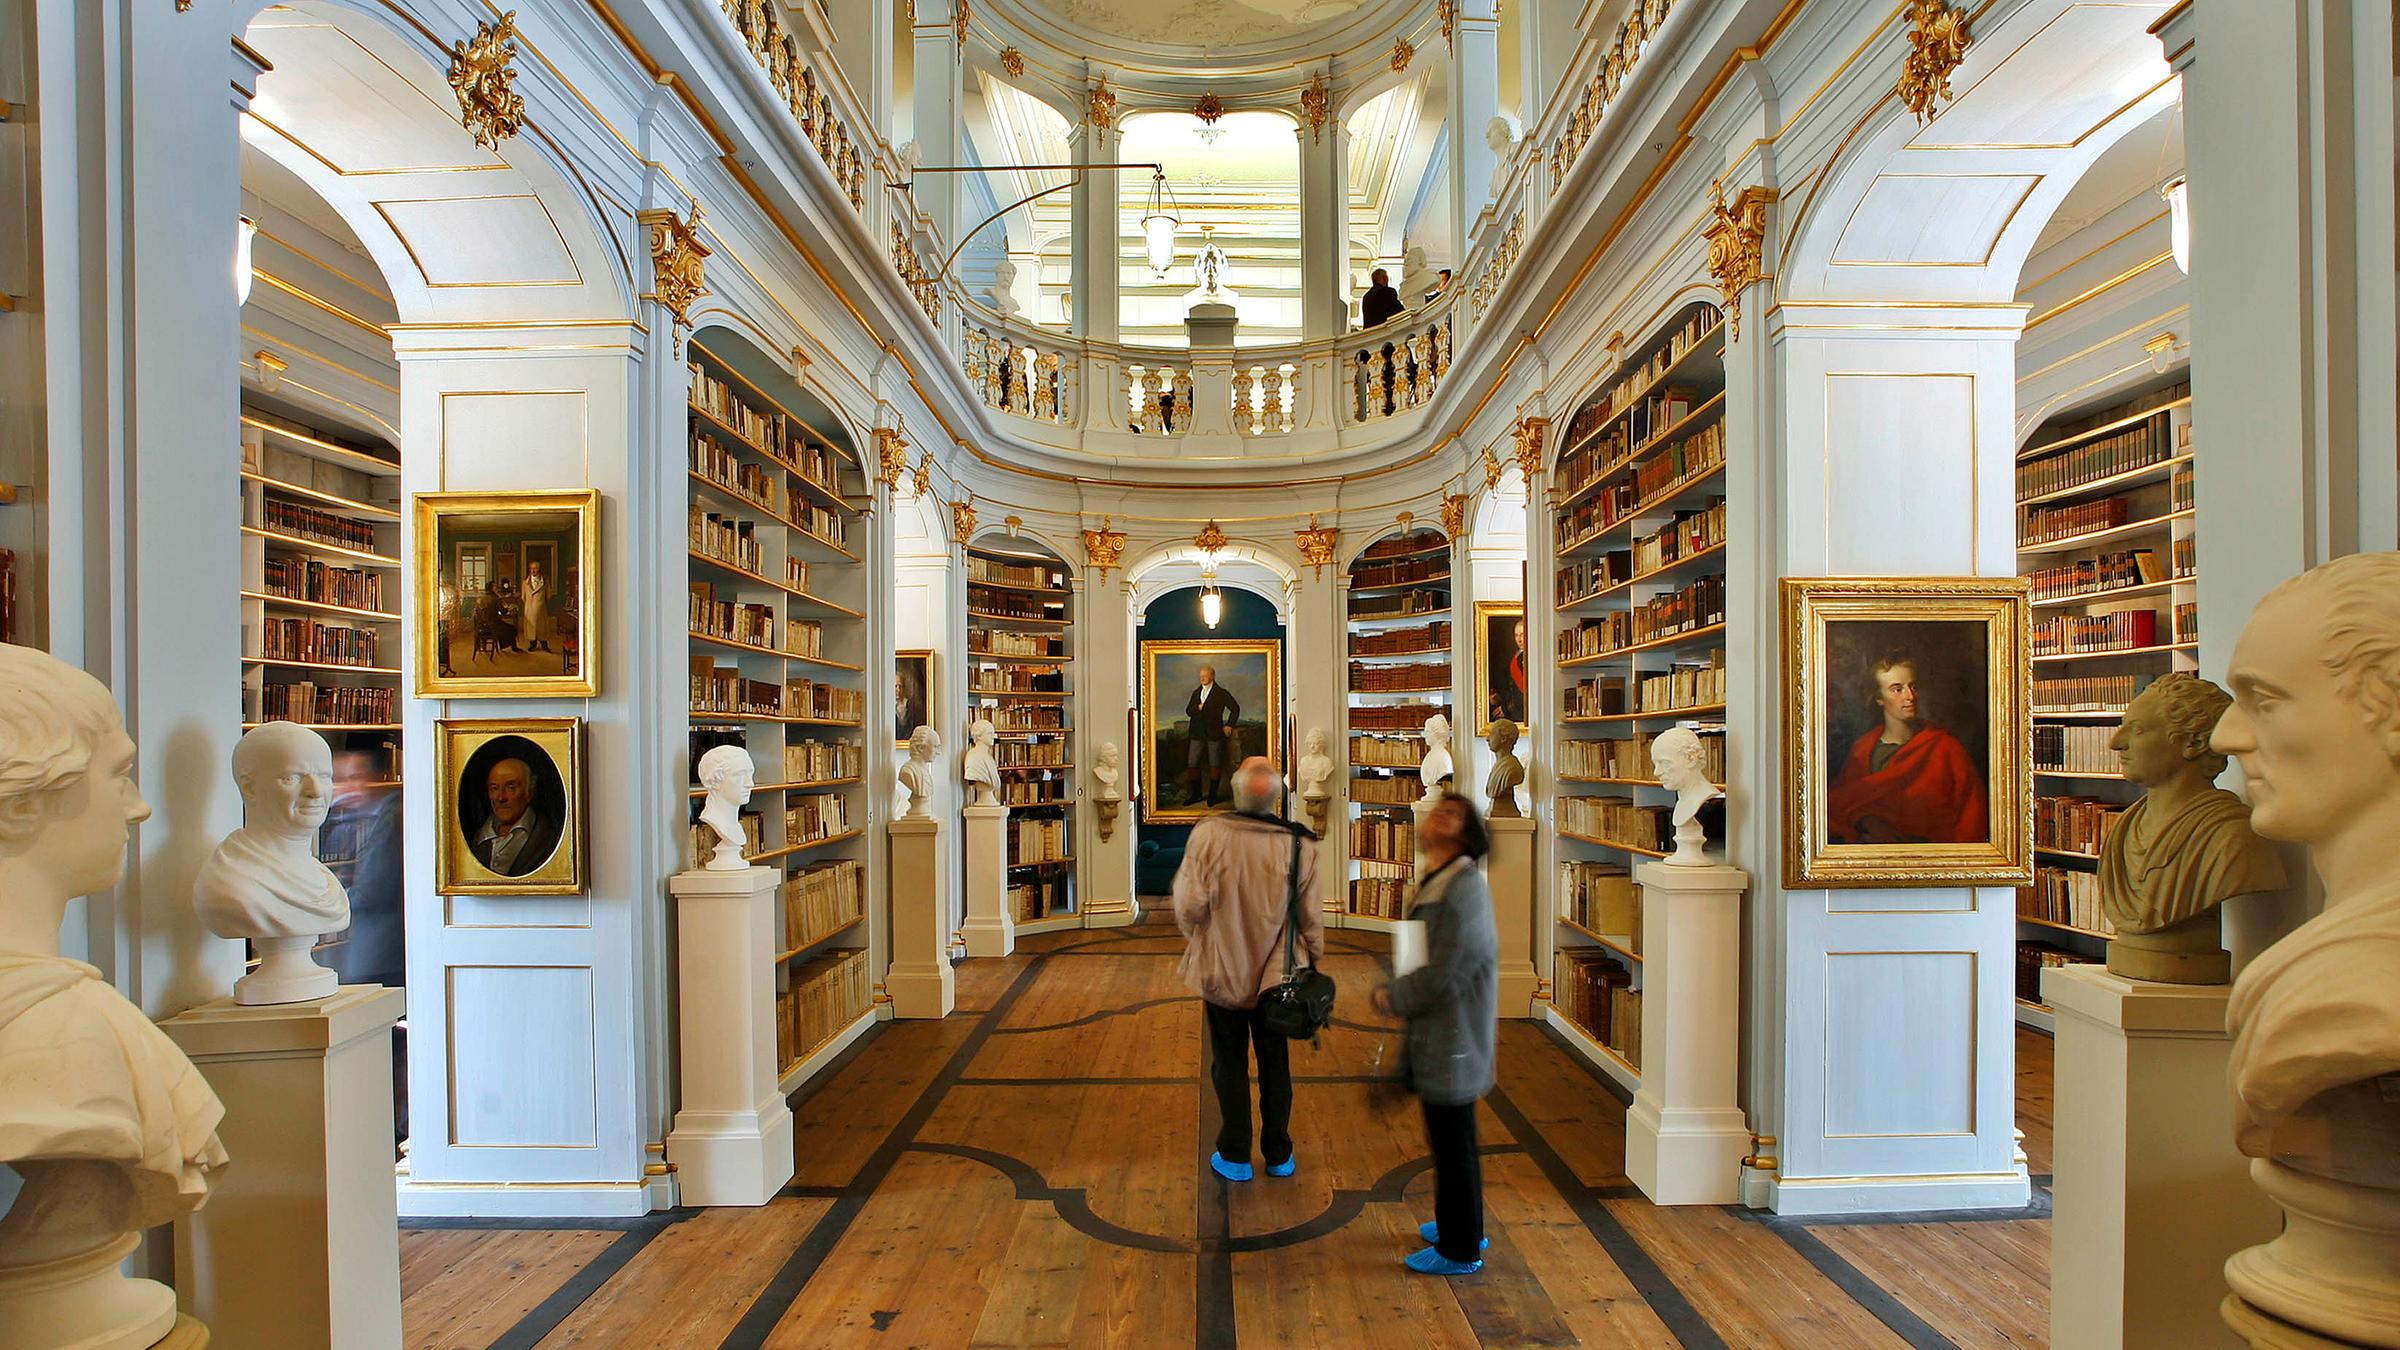 Herzogin Anna Amalia Bibliothek in Weimar